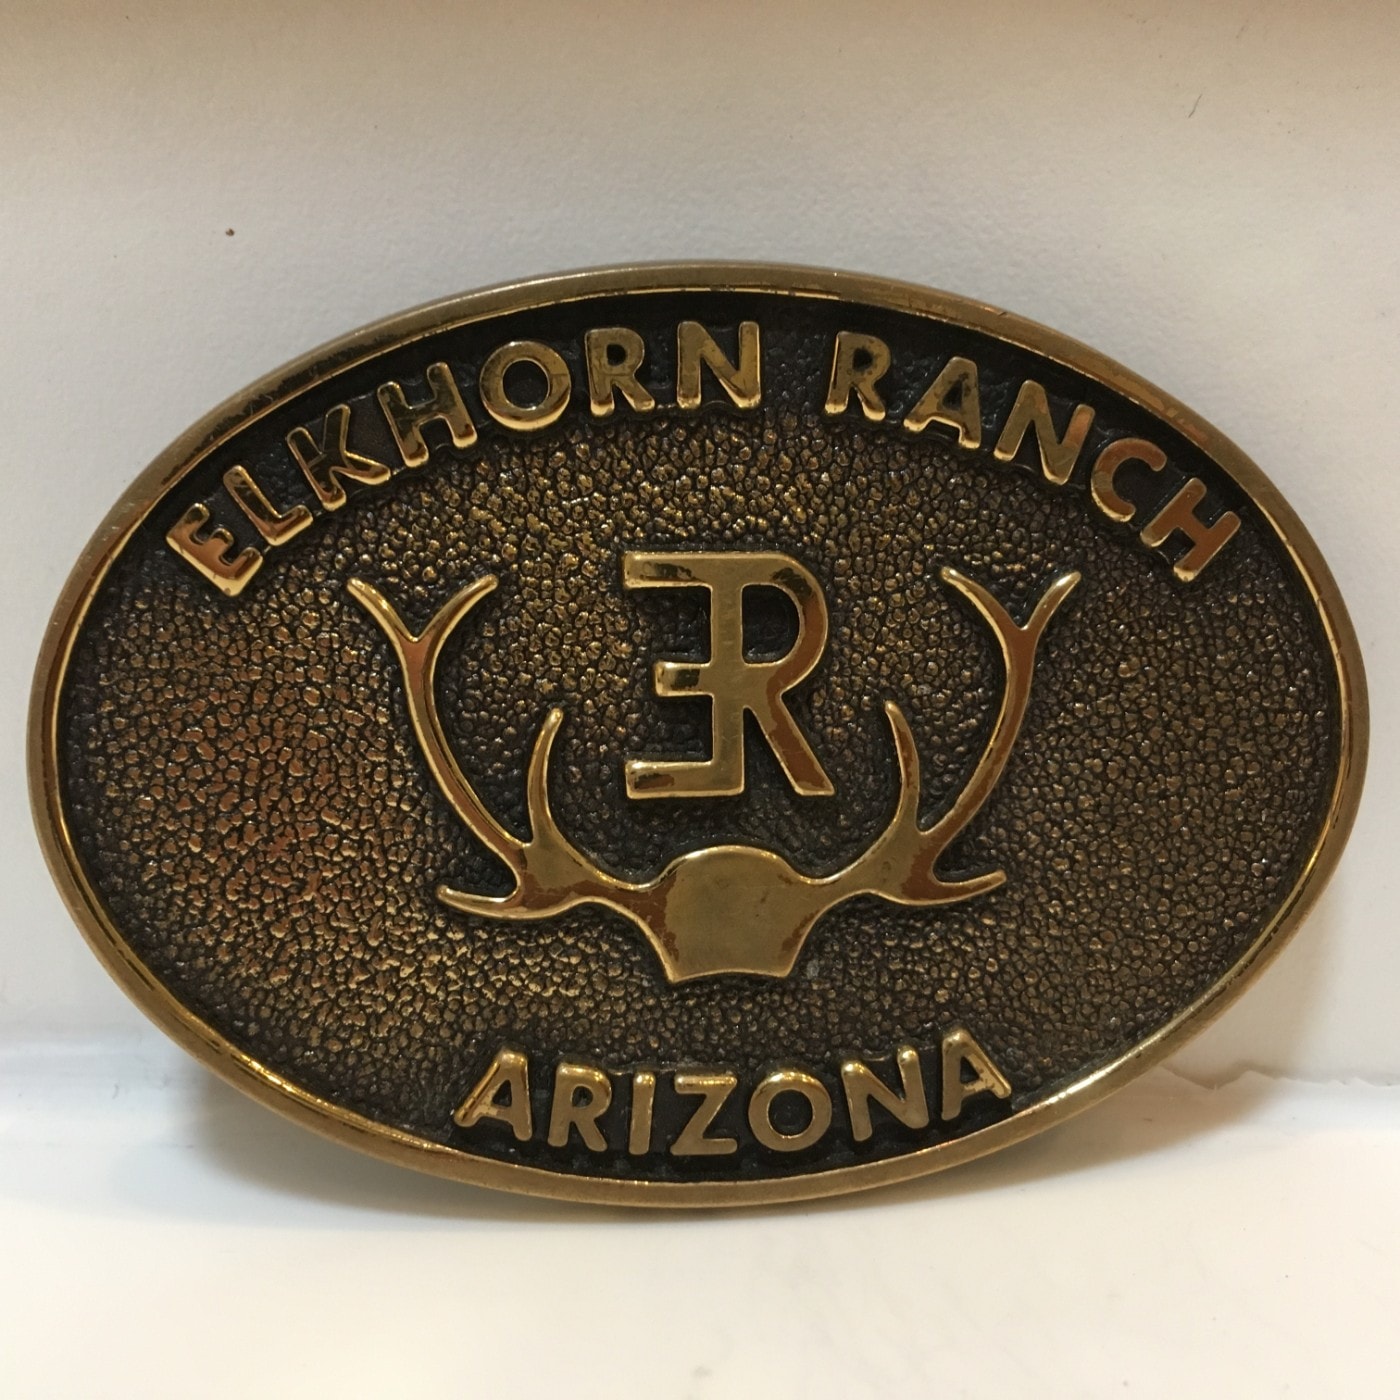 Elkhorn Ranch Arizona Belt Buckle